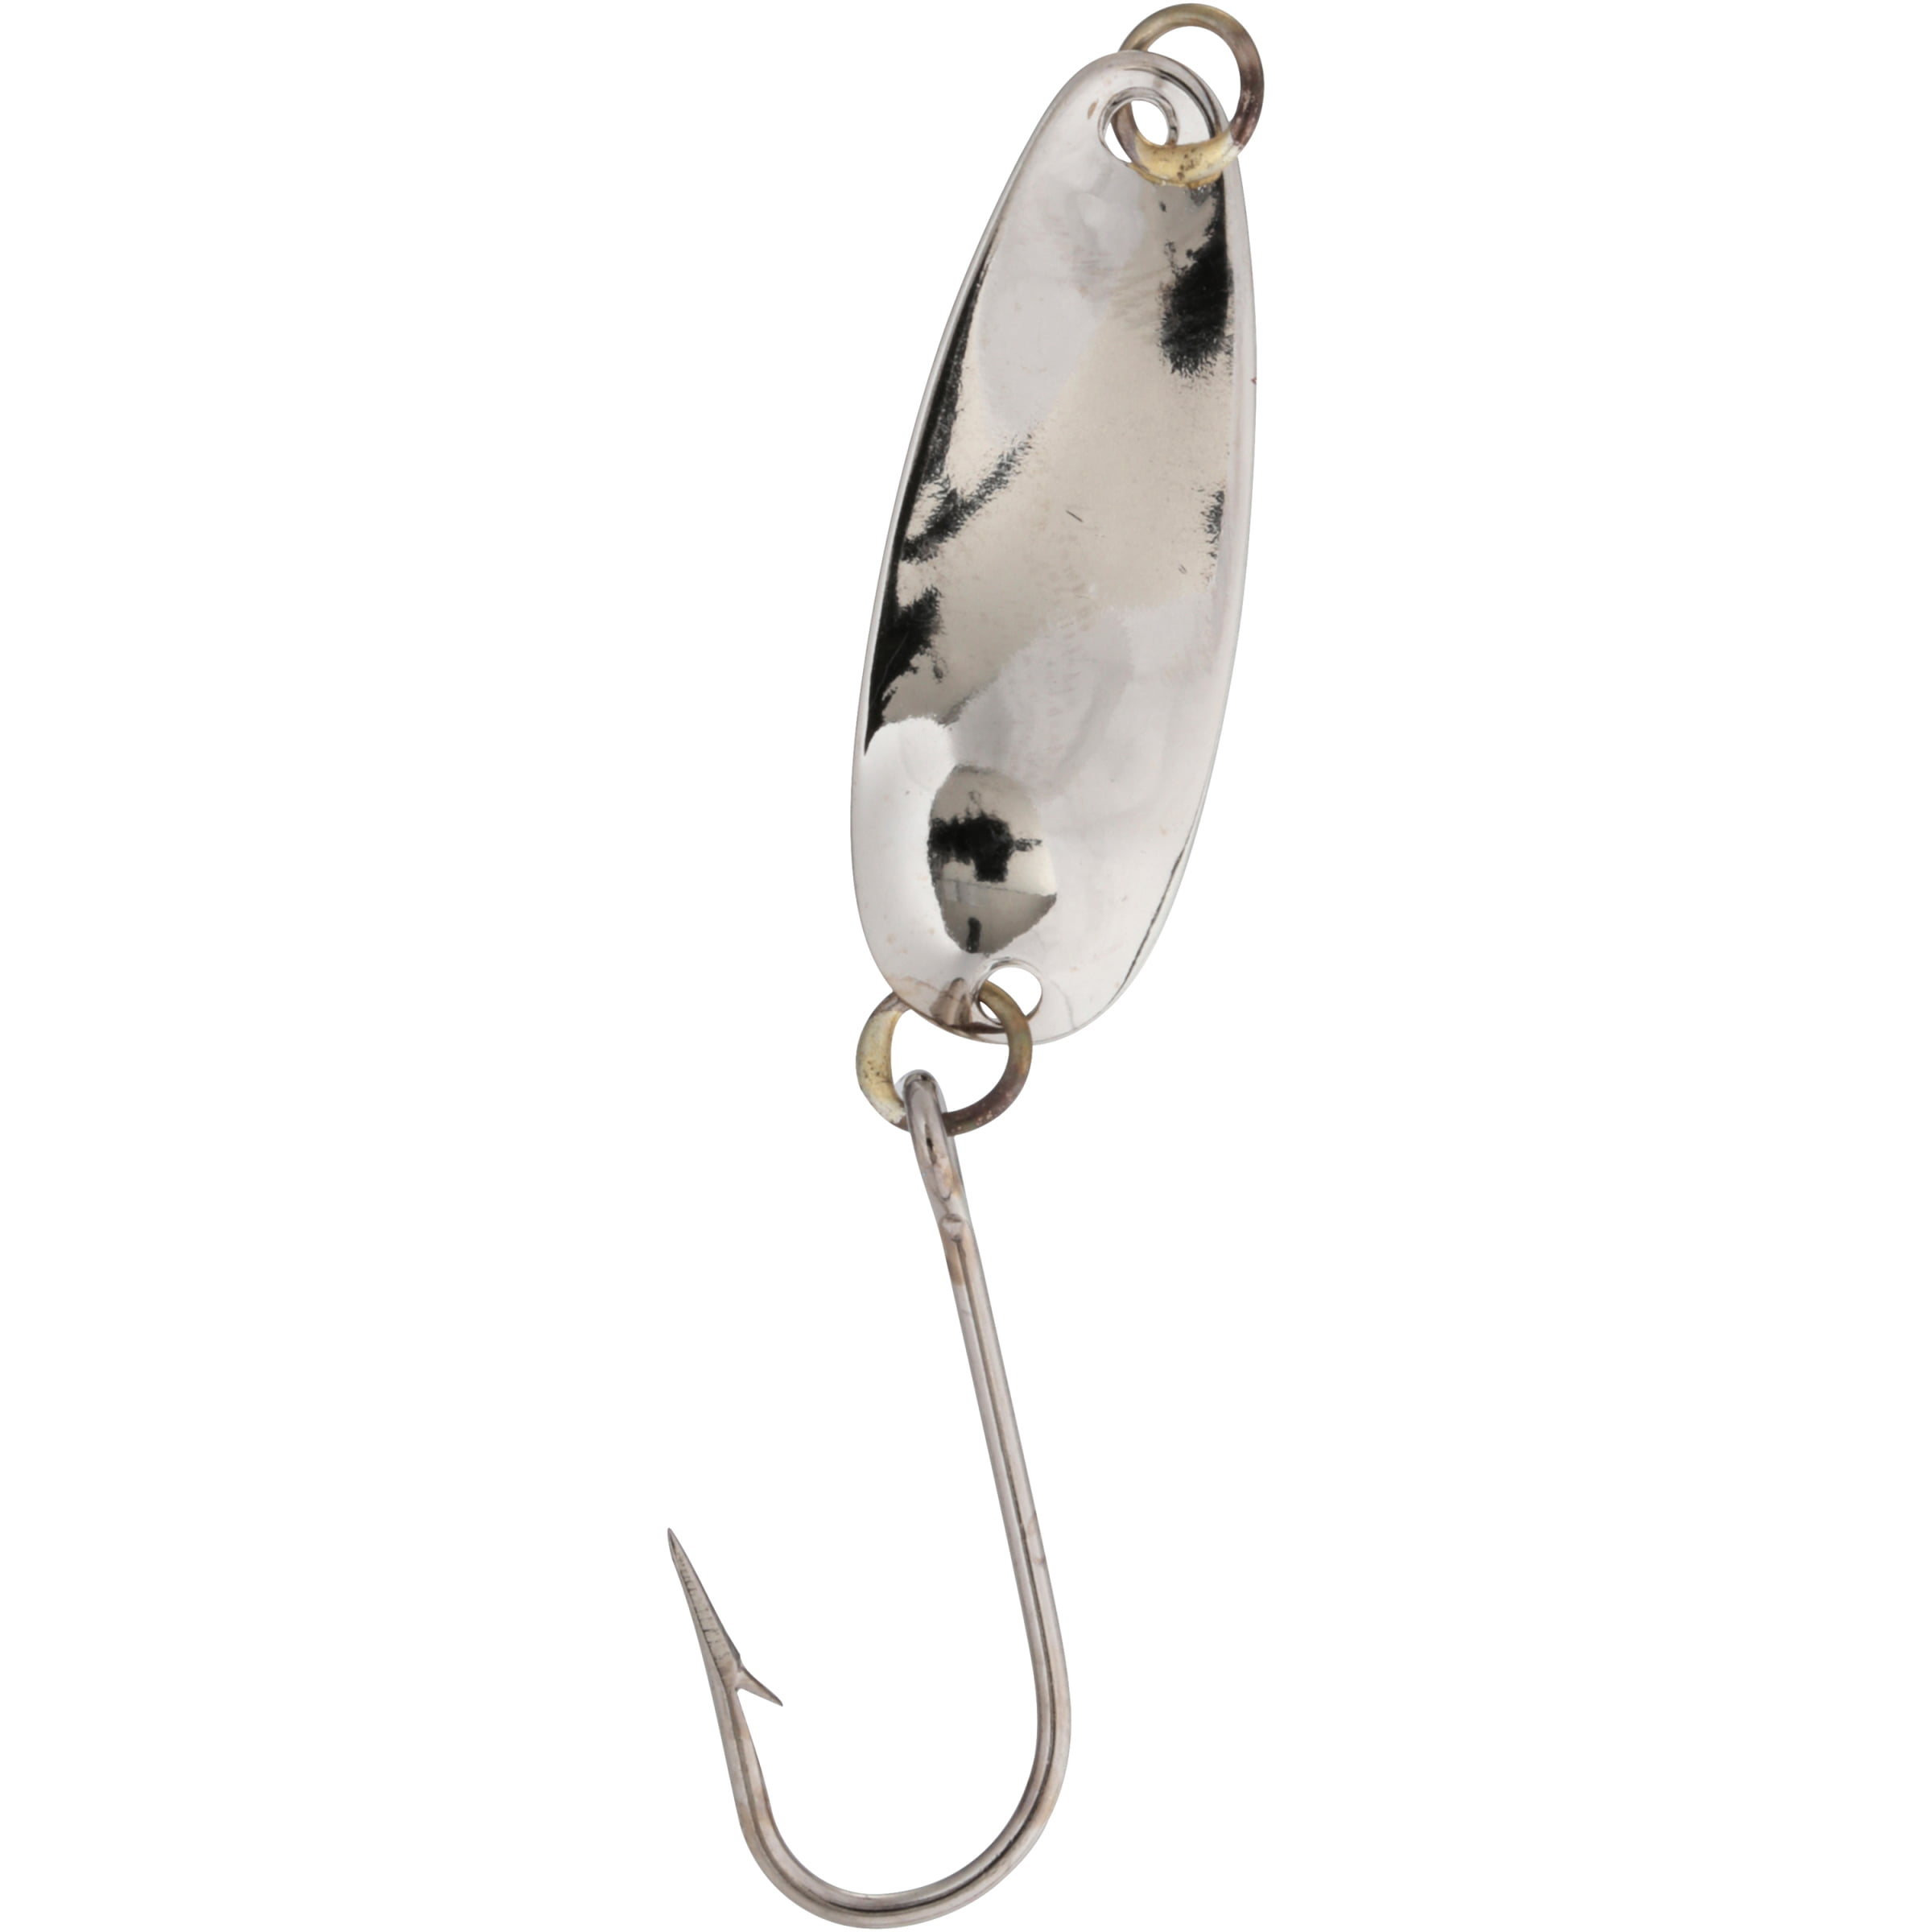 Dick Nite® Spoons Original #1 Nickel Chartreuse Head Fishing Hook 